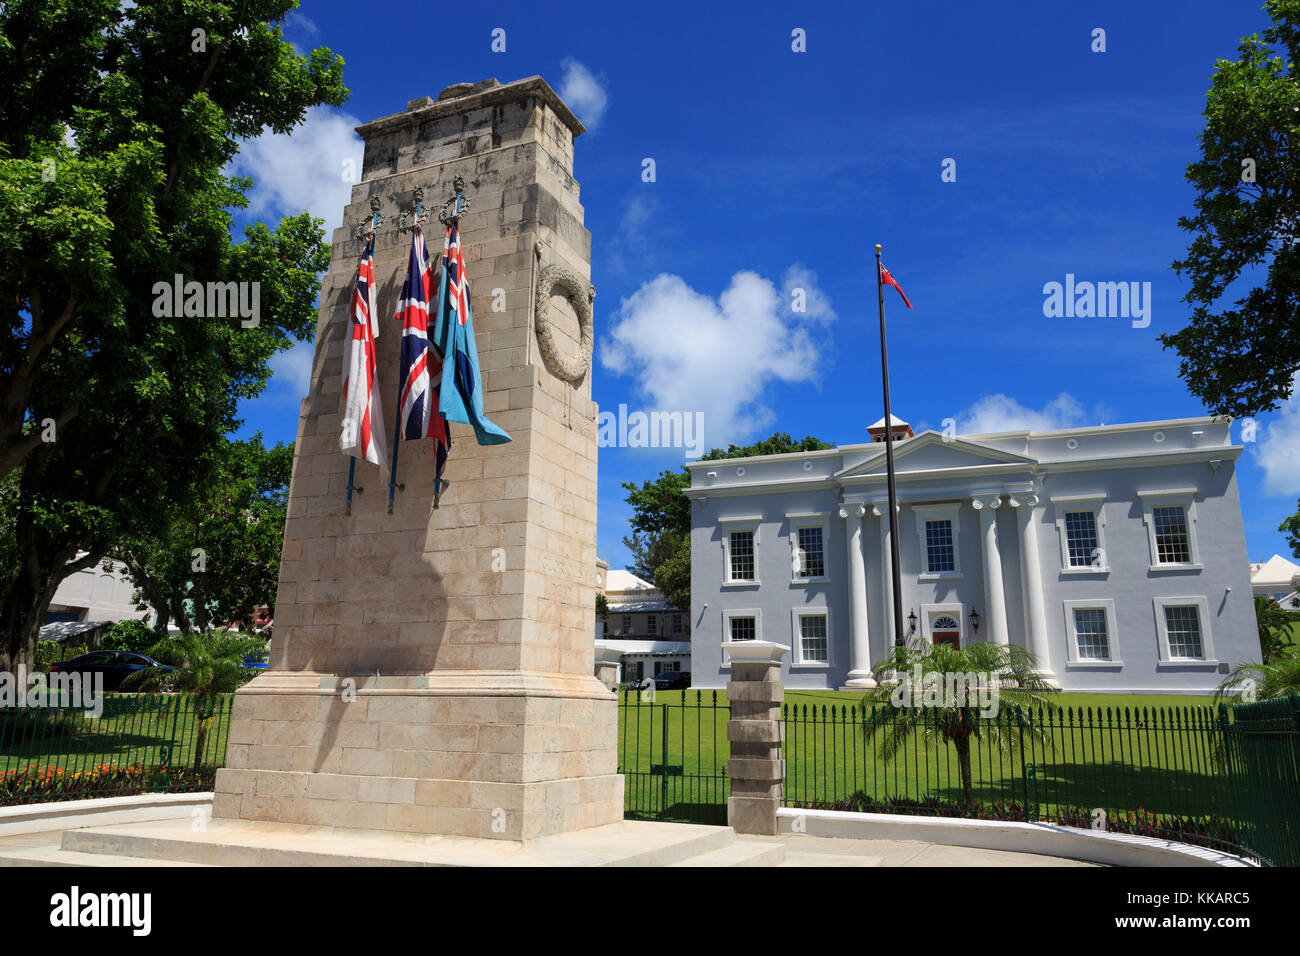 Mémorial de guerre, Cabinet Building, Hamilton City, Pembroke Parish, Bermudes, Atlantique, Amérique centrale Banque D'Images